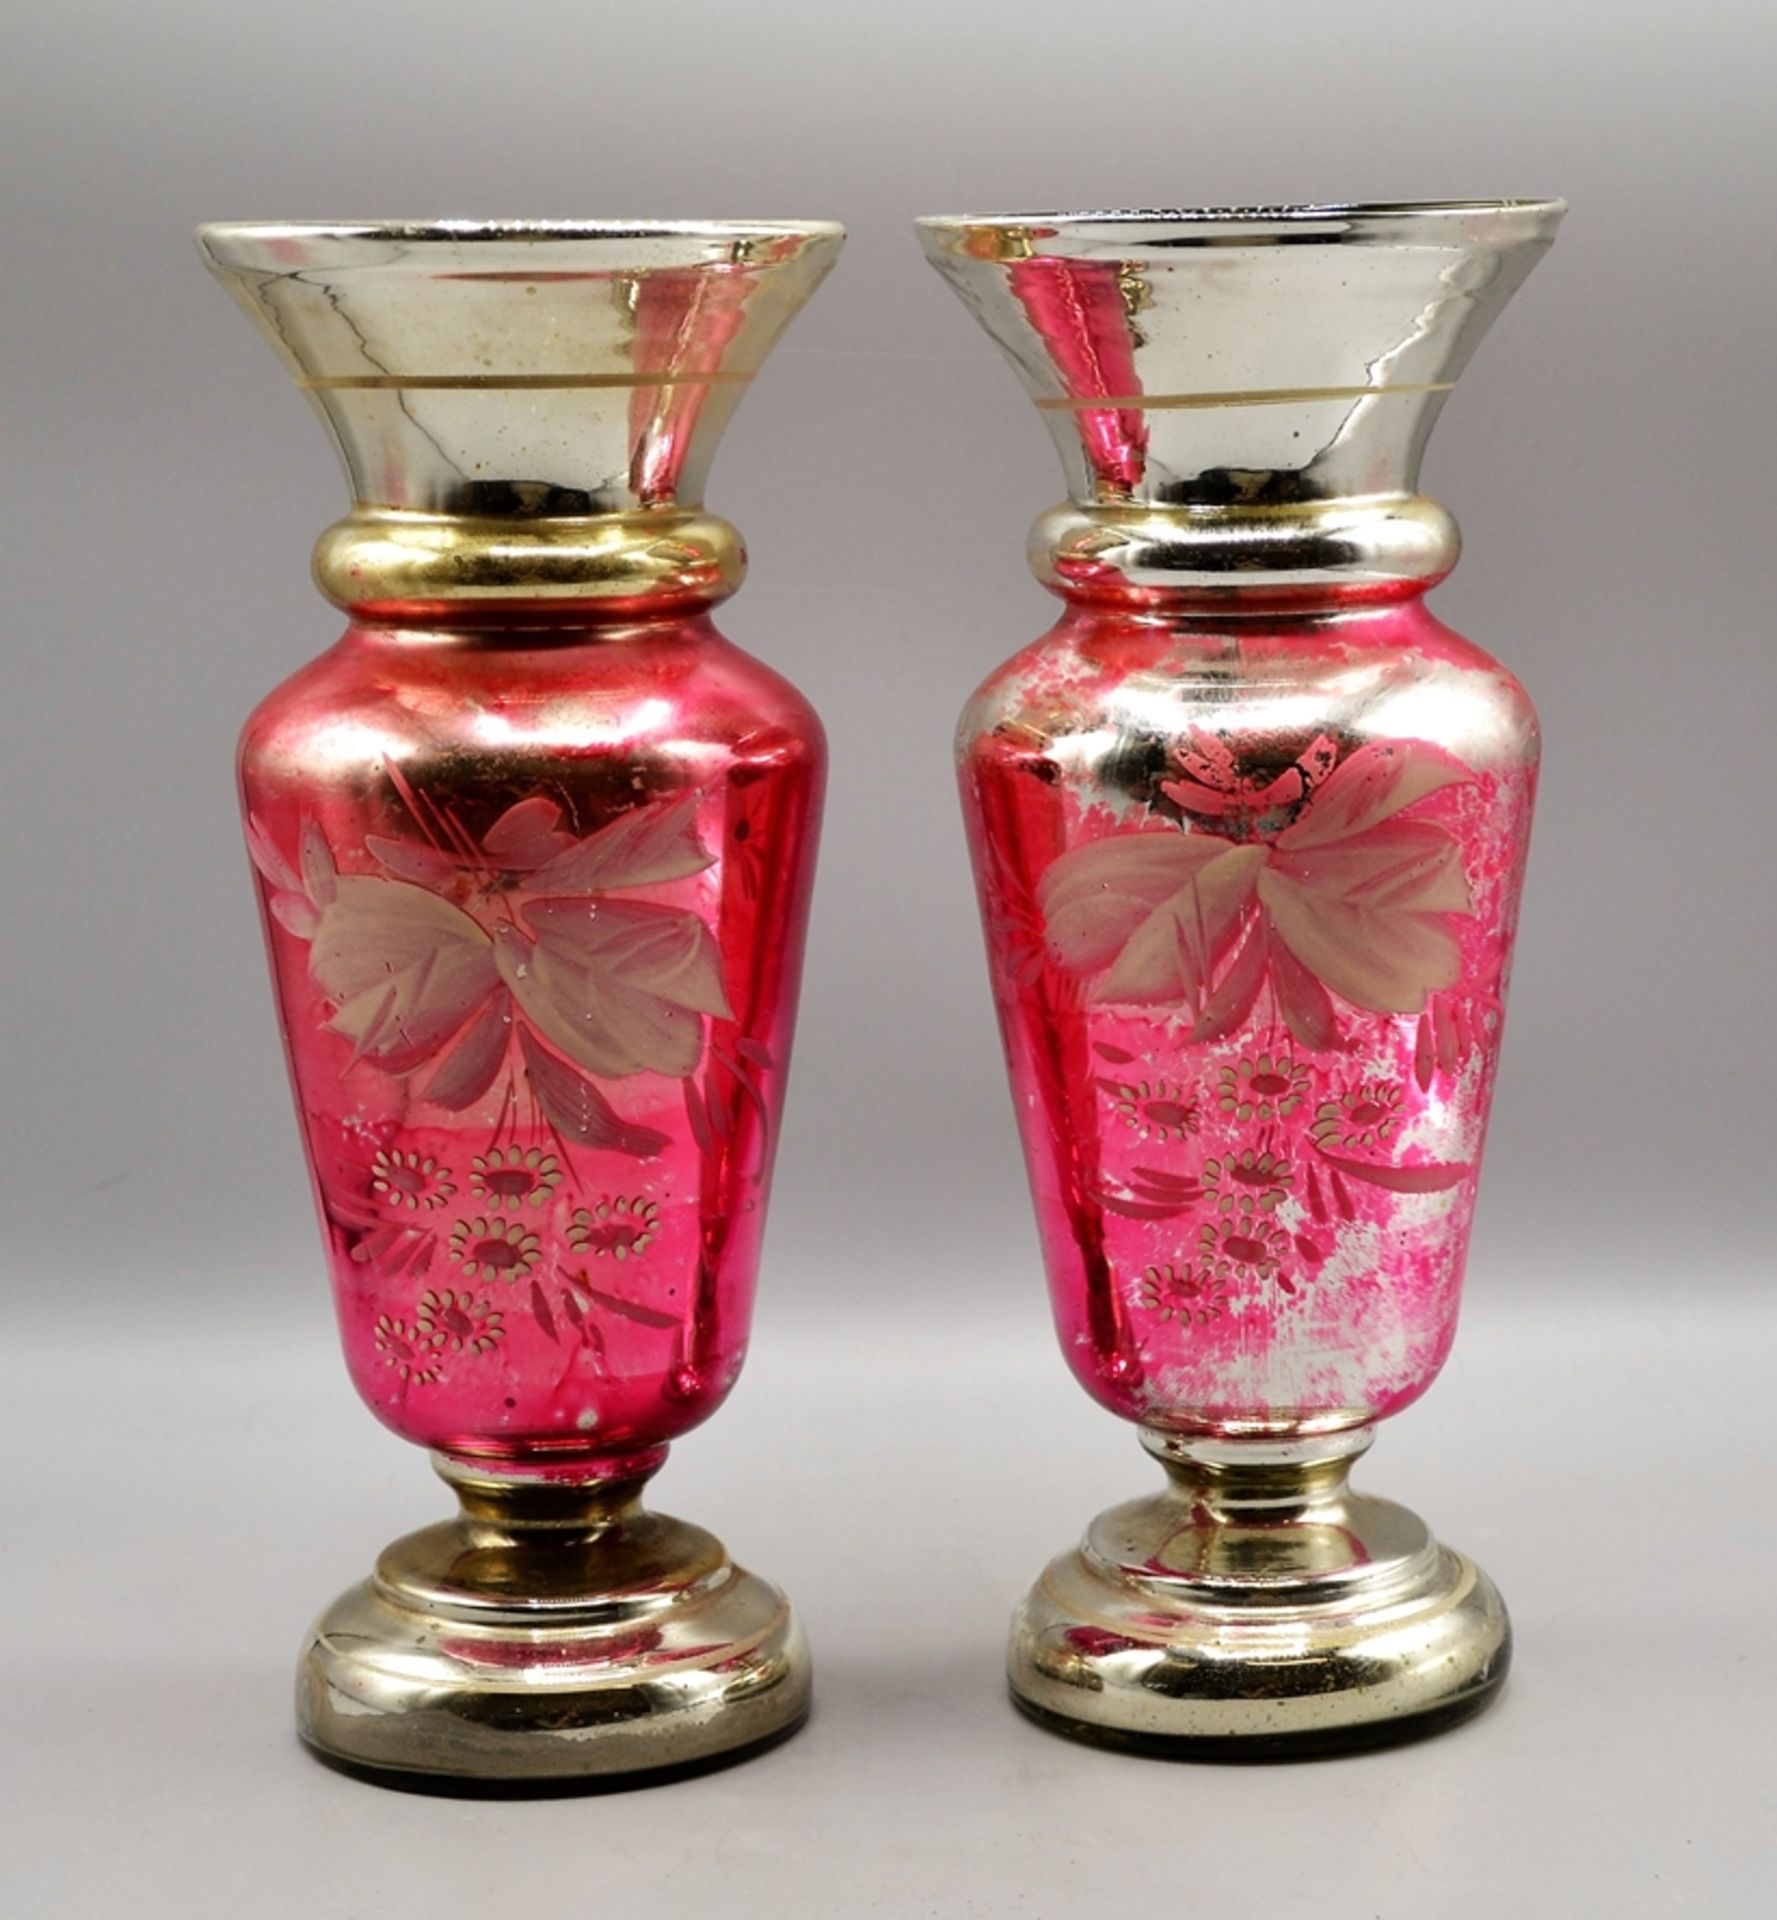 Bauernsilber Vasen Paar rosa, Stoßboden innen für Blumen bei einer Vase beschädigt (von außen nicht